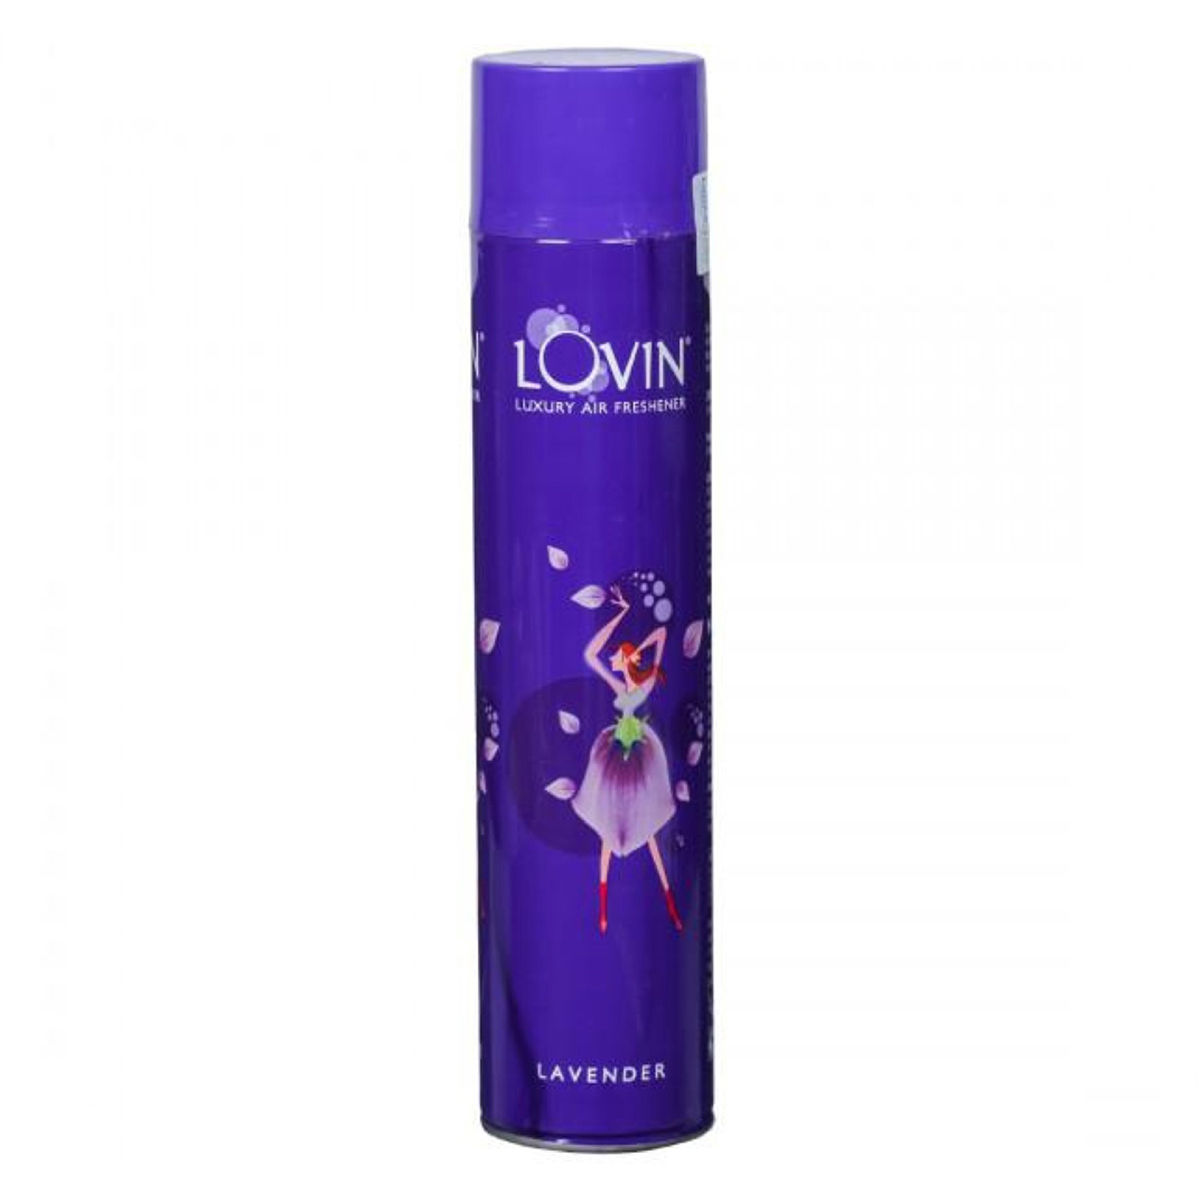 Buy Lovin Lavender Air Freshner, 160 ml Online